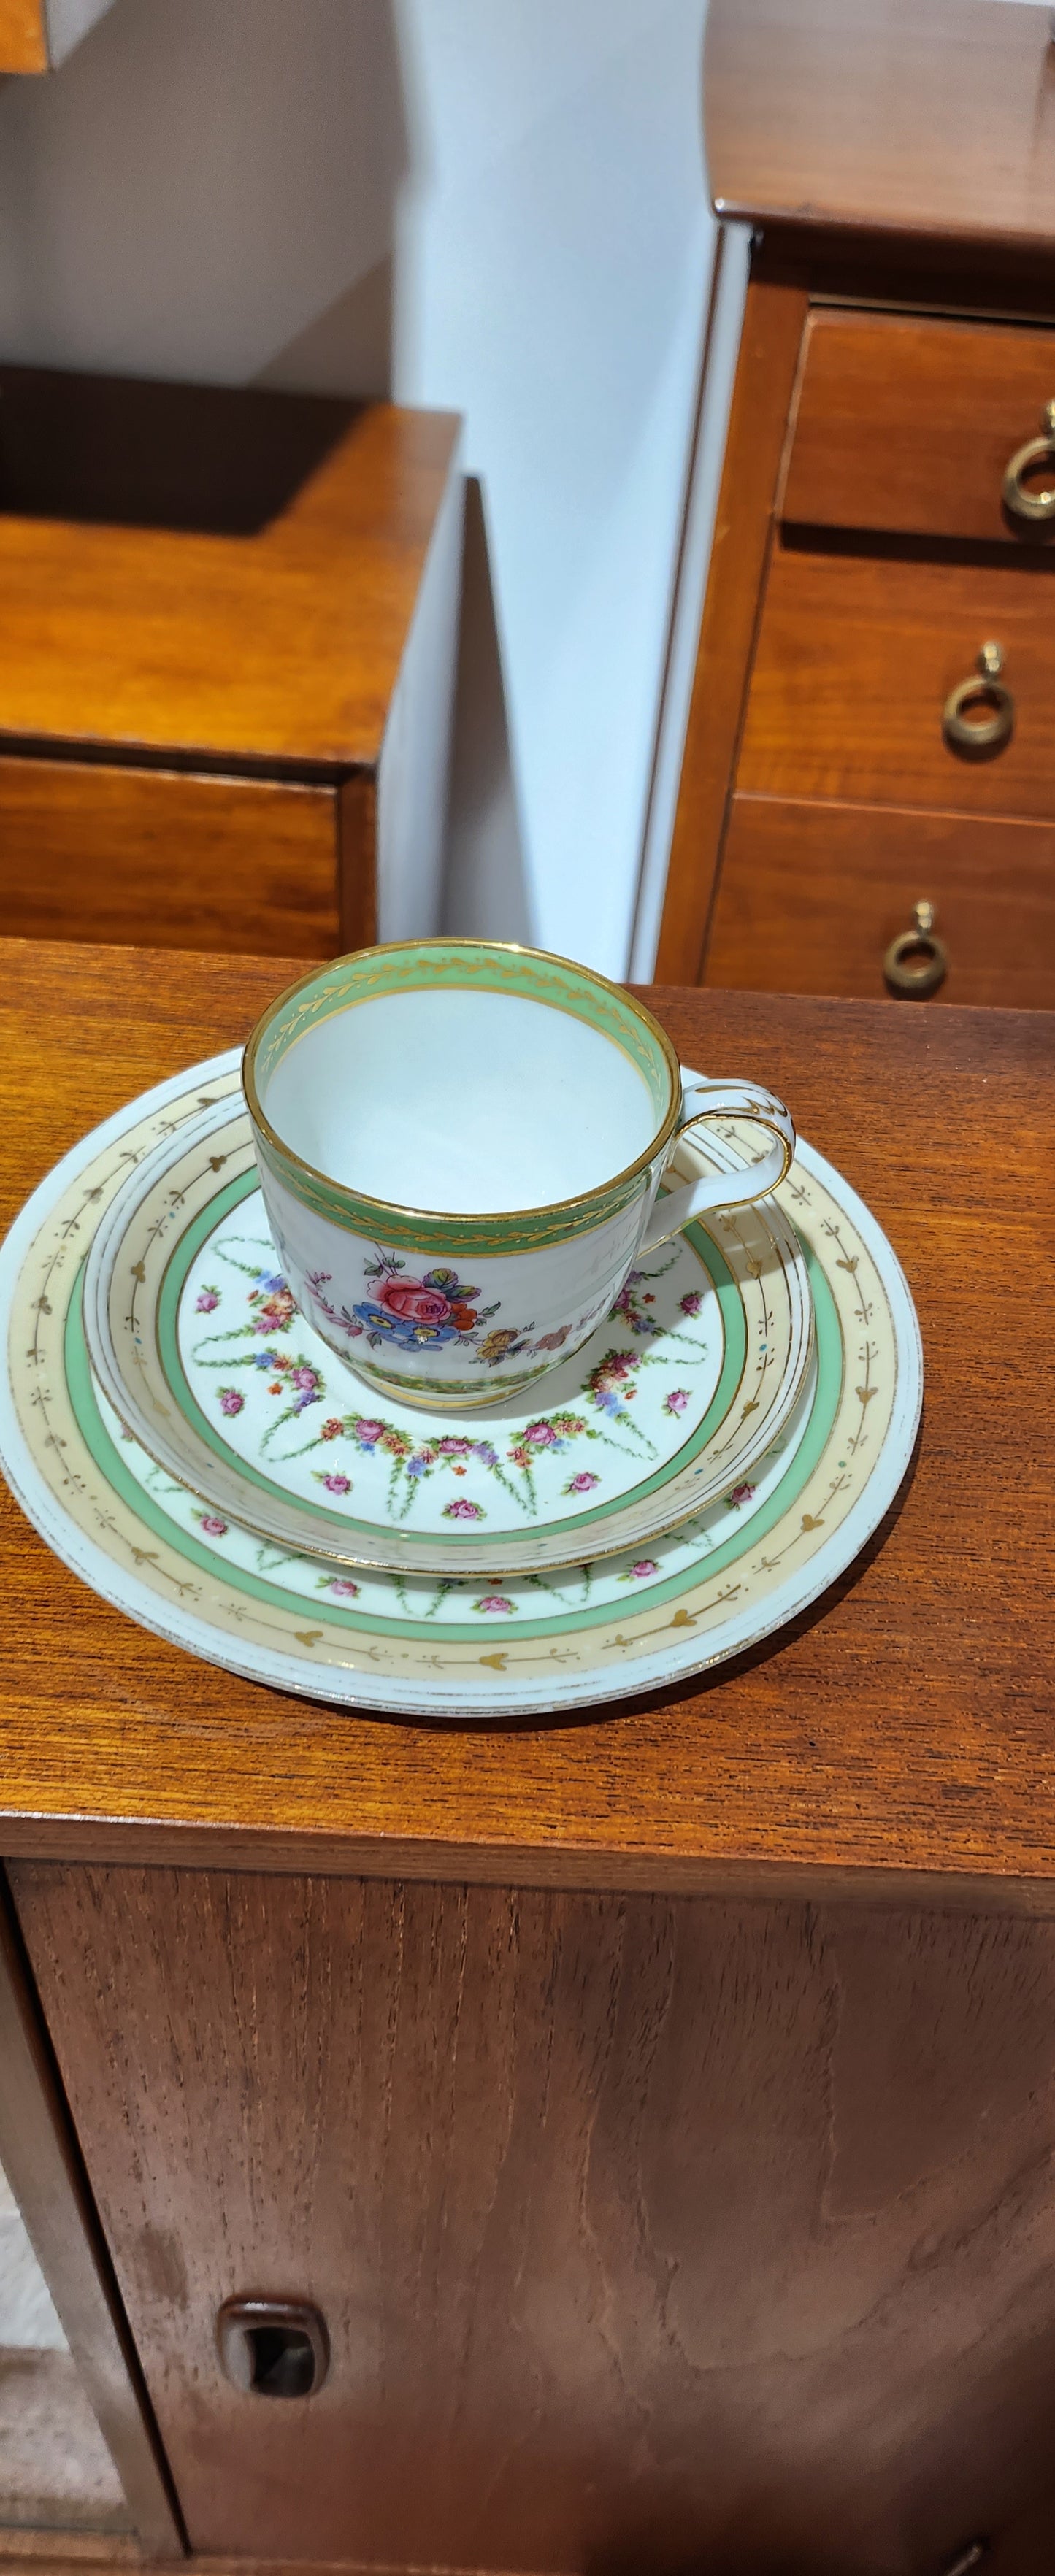 Victorian green tea set